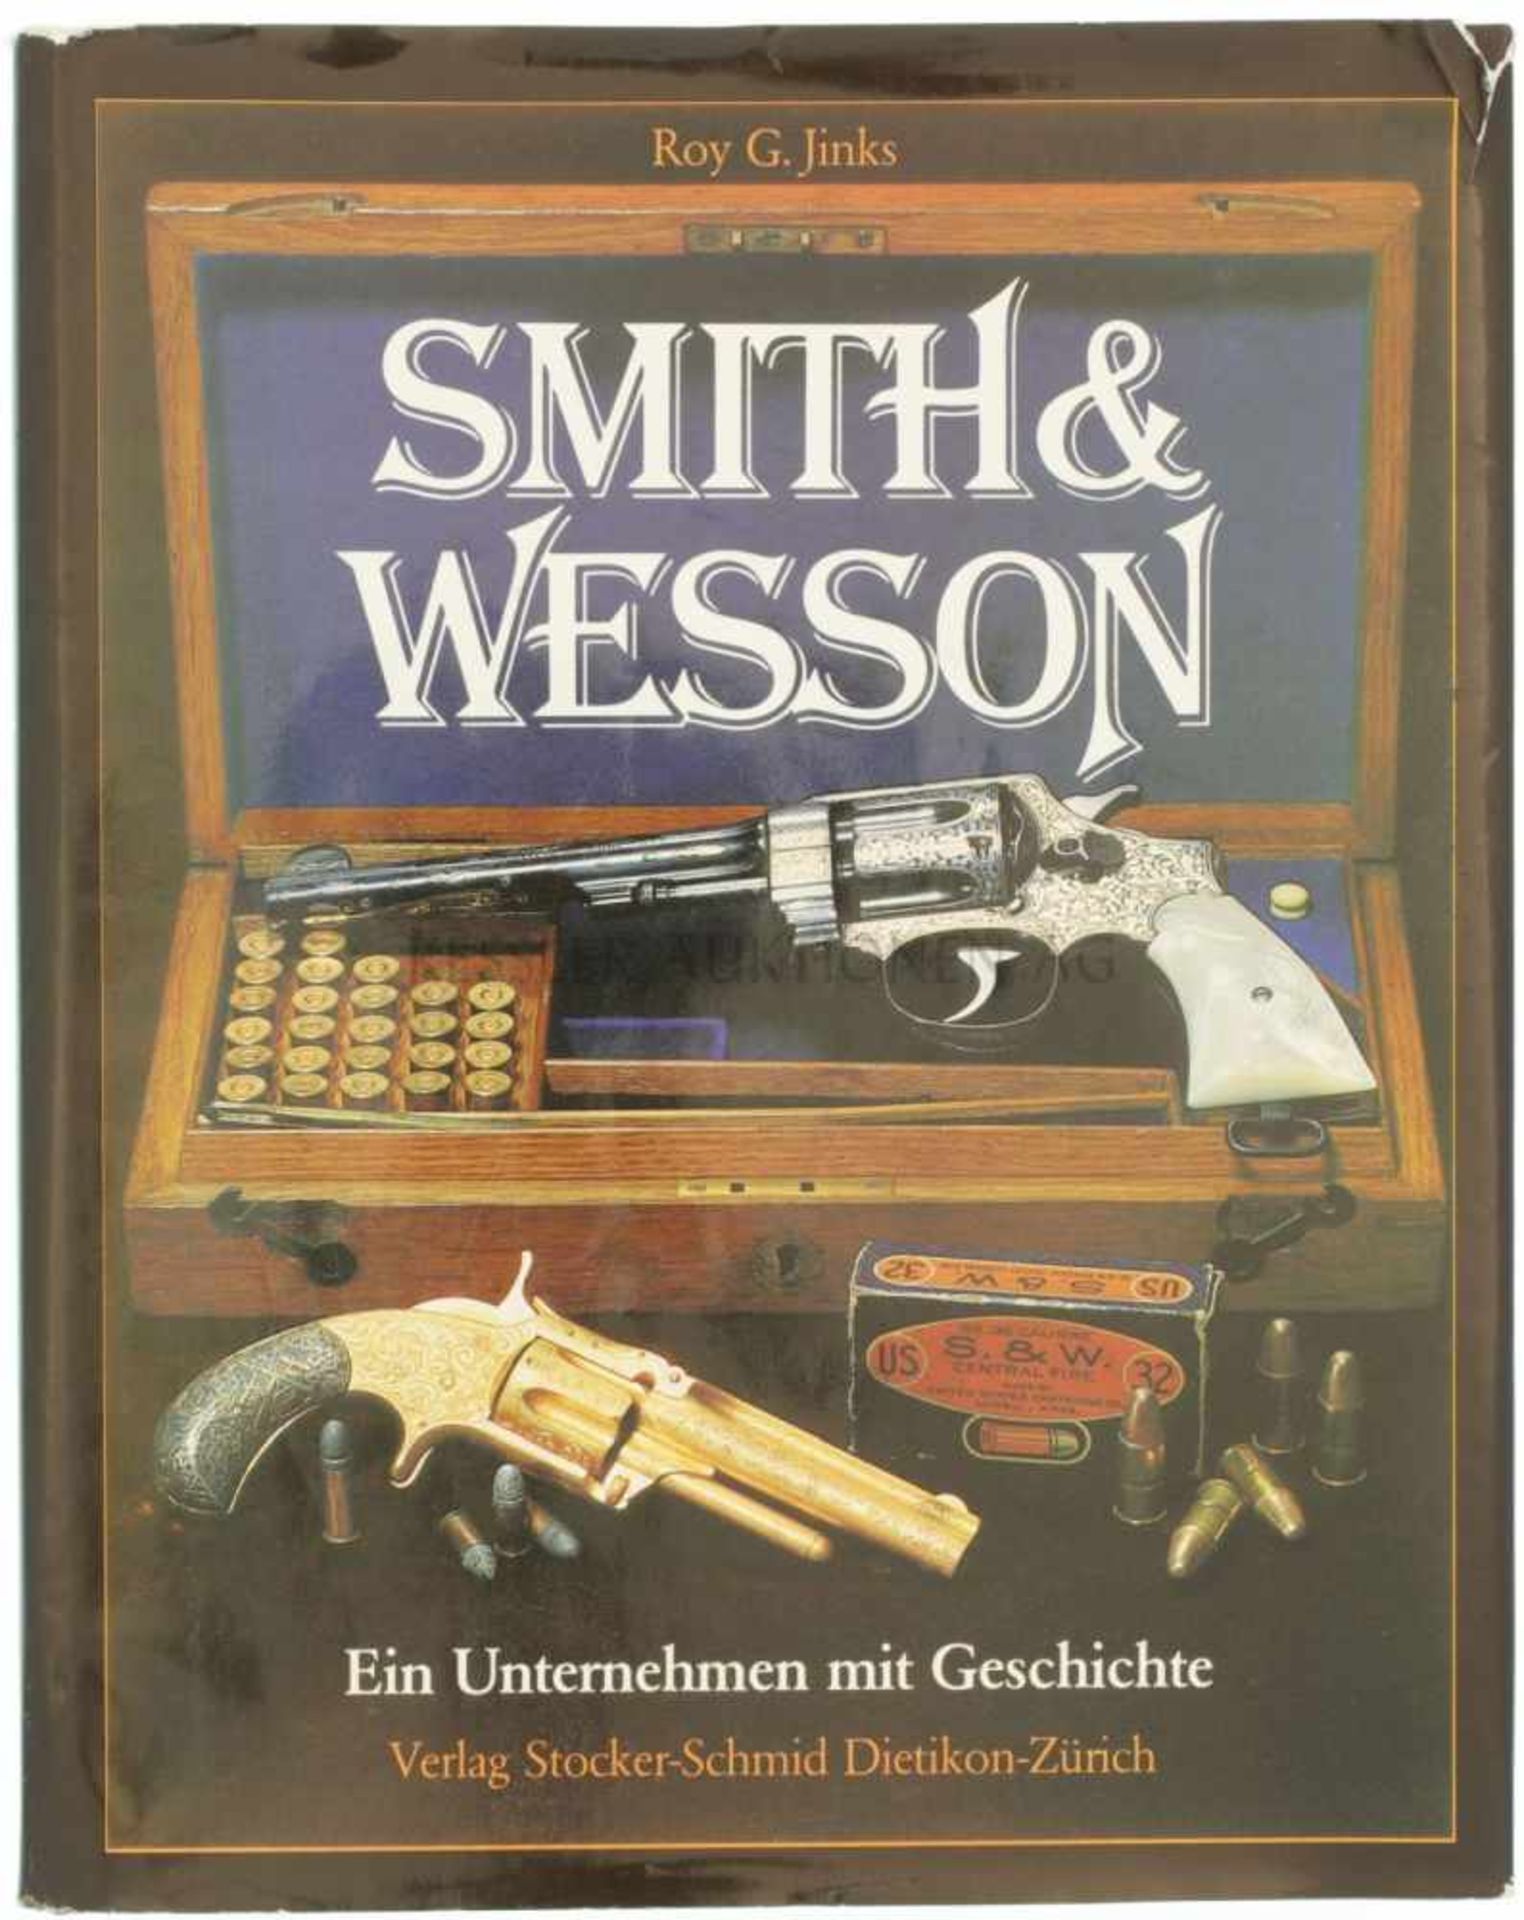 Smith & Wesson, ein Unternehmen mit Geschichte Autor Roy G. Jinks, Verlag Stocker-Schmid Dietikon-